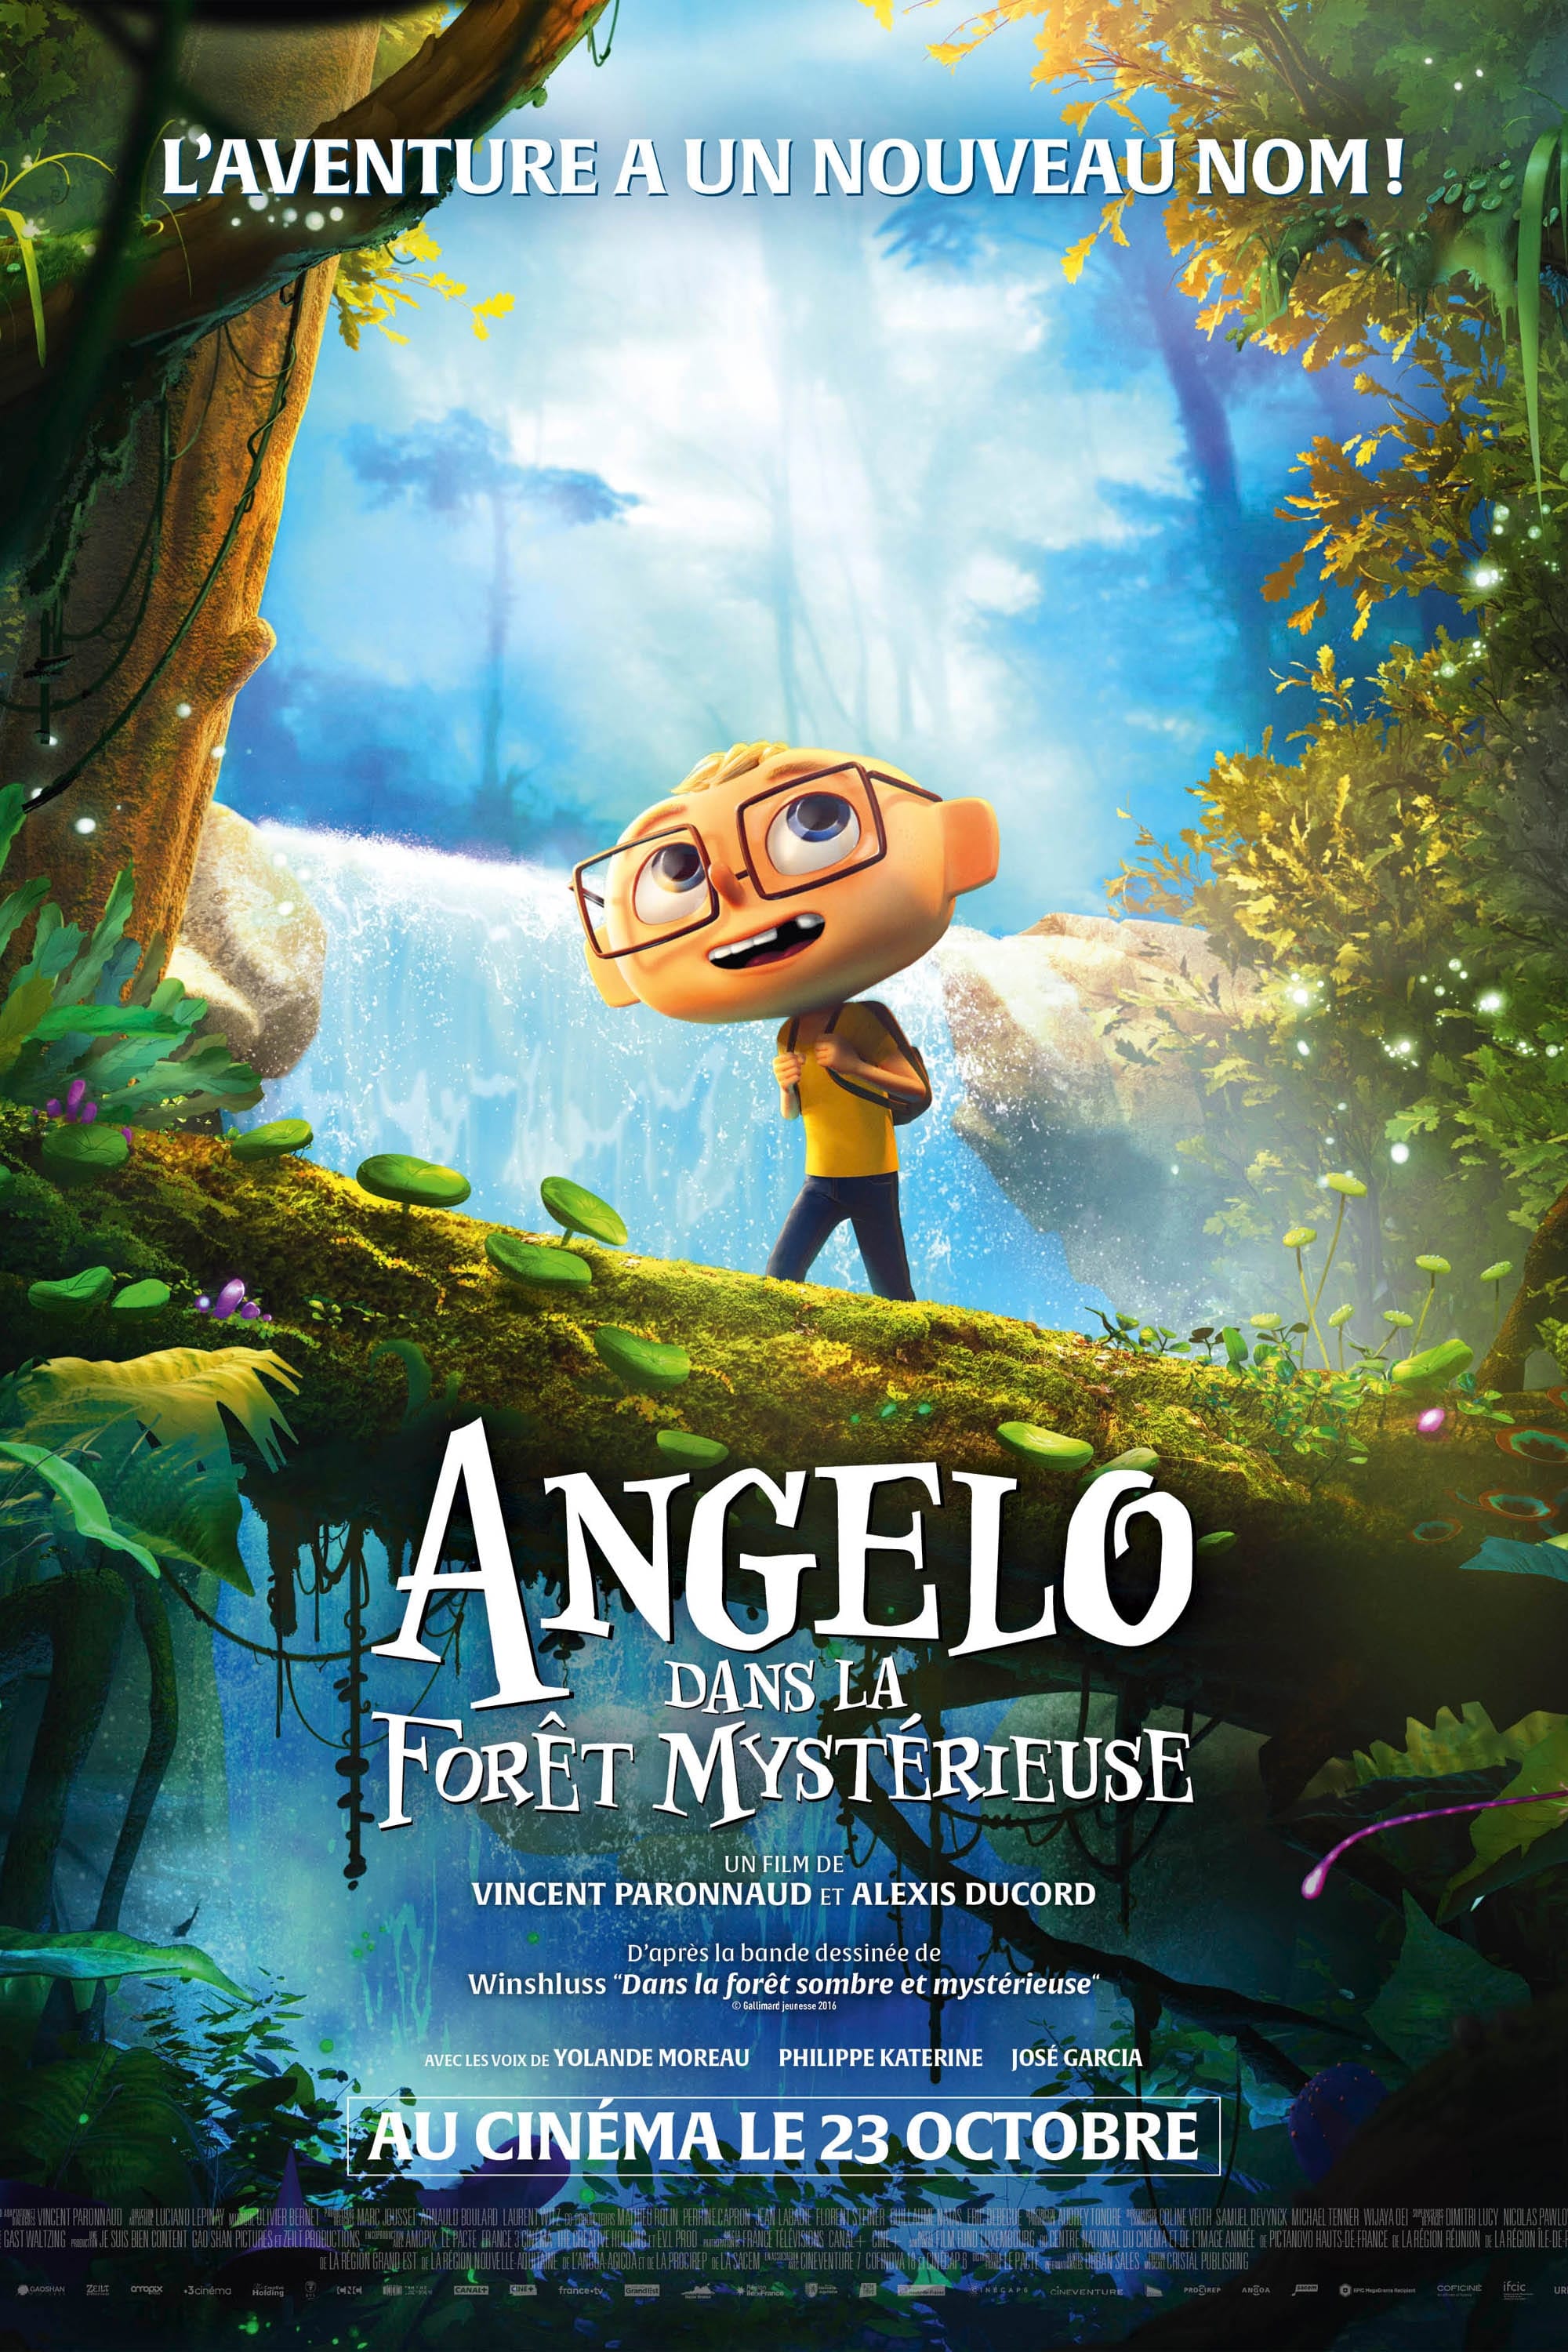 Angelo dans la forêt mystérieuse